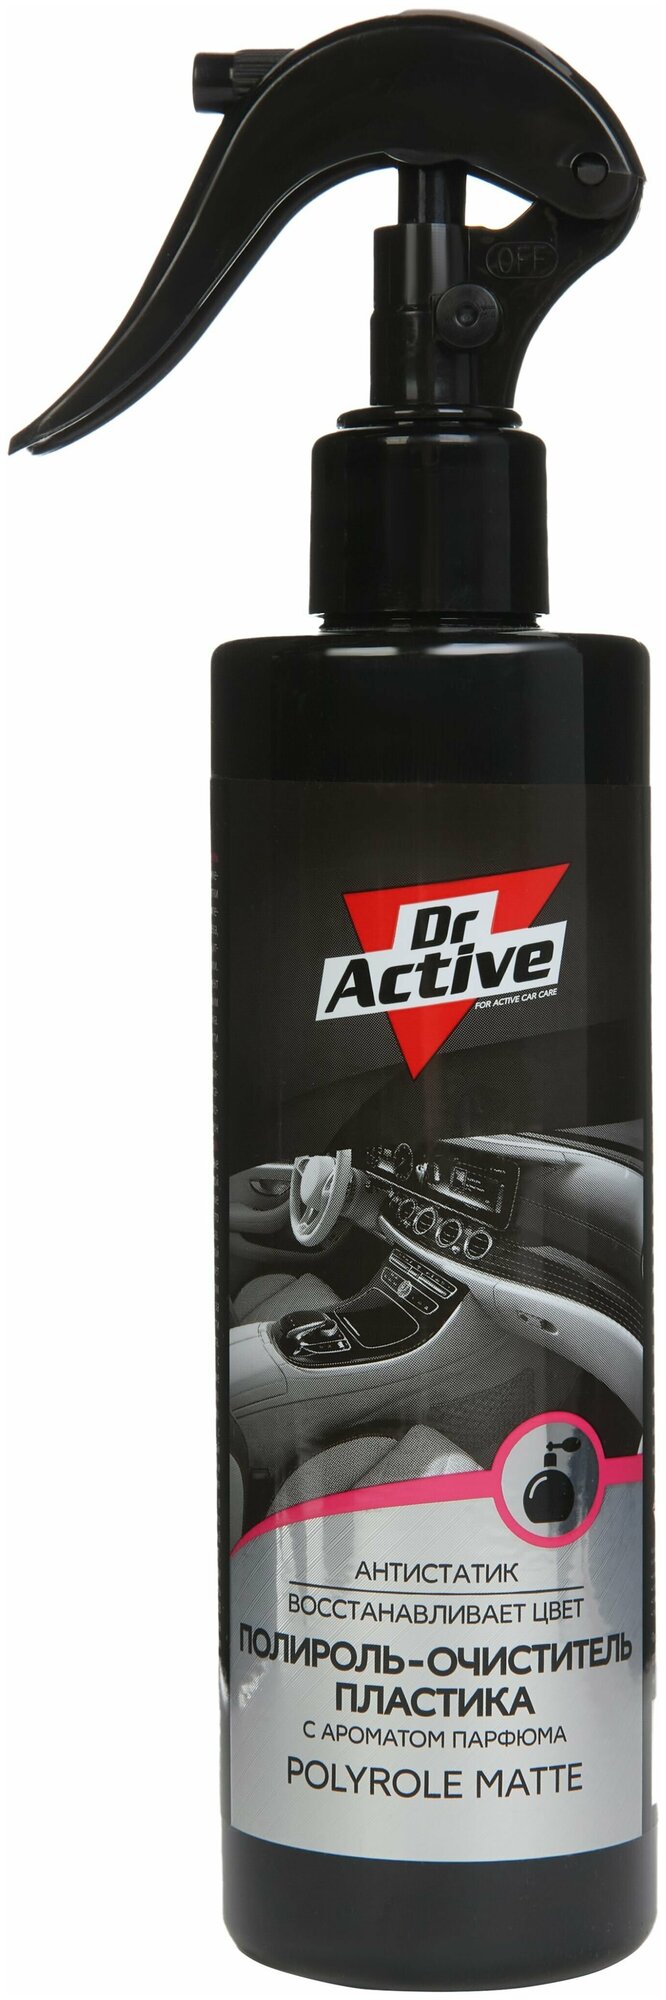 Матовый полироль-очиститель пластика Dr. Active MATTE с парфюмированным ароматом 250 мл спрей